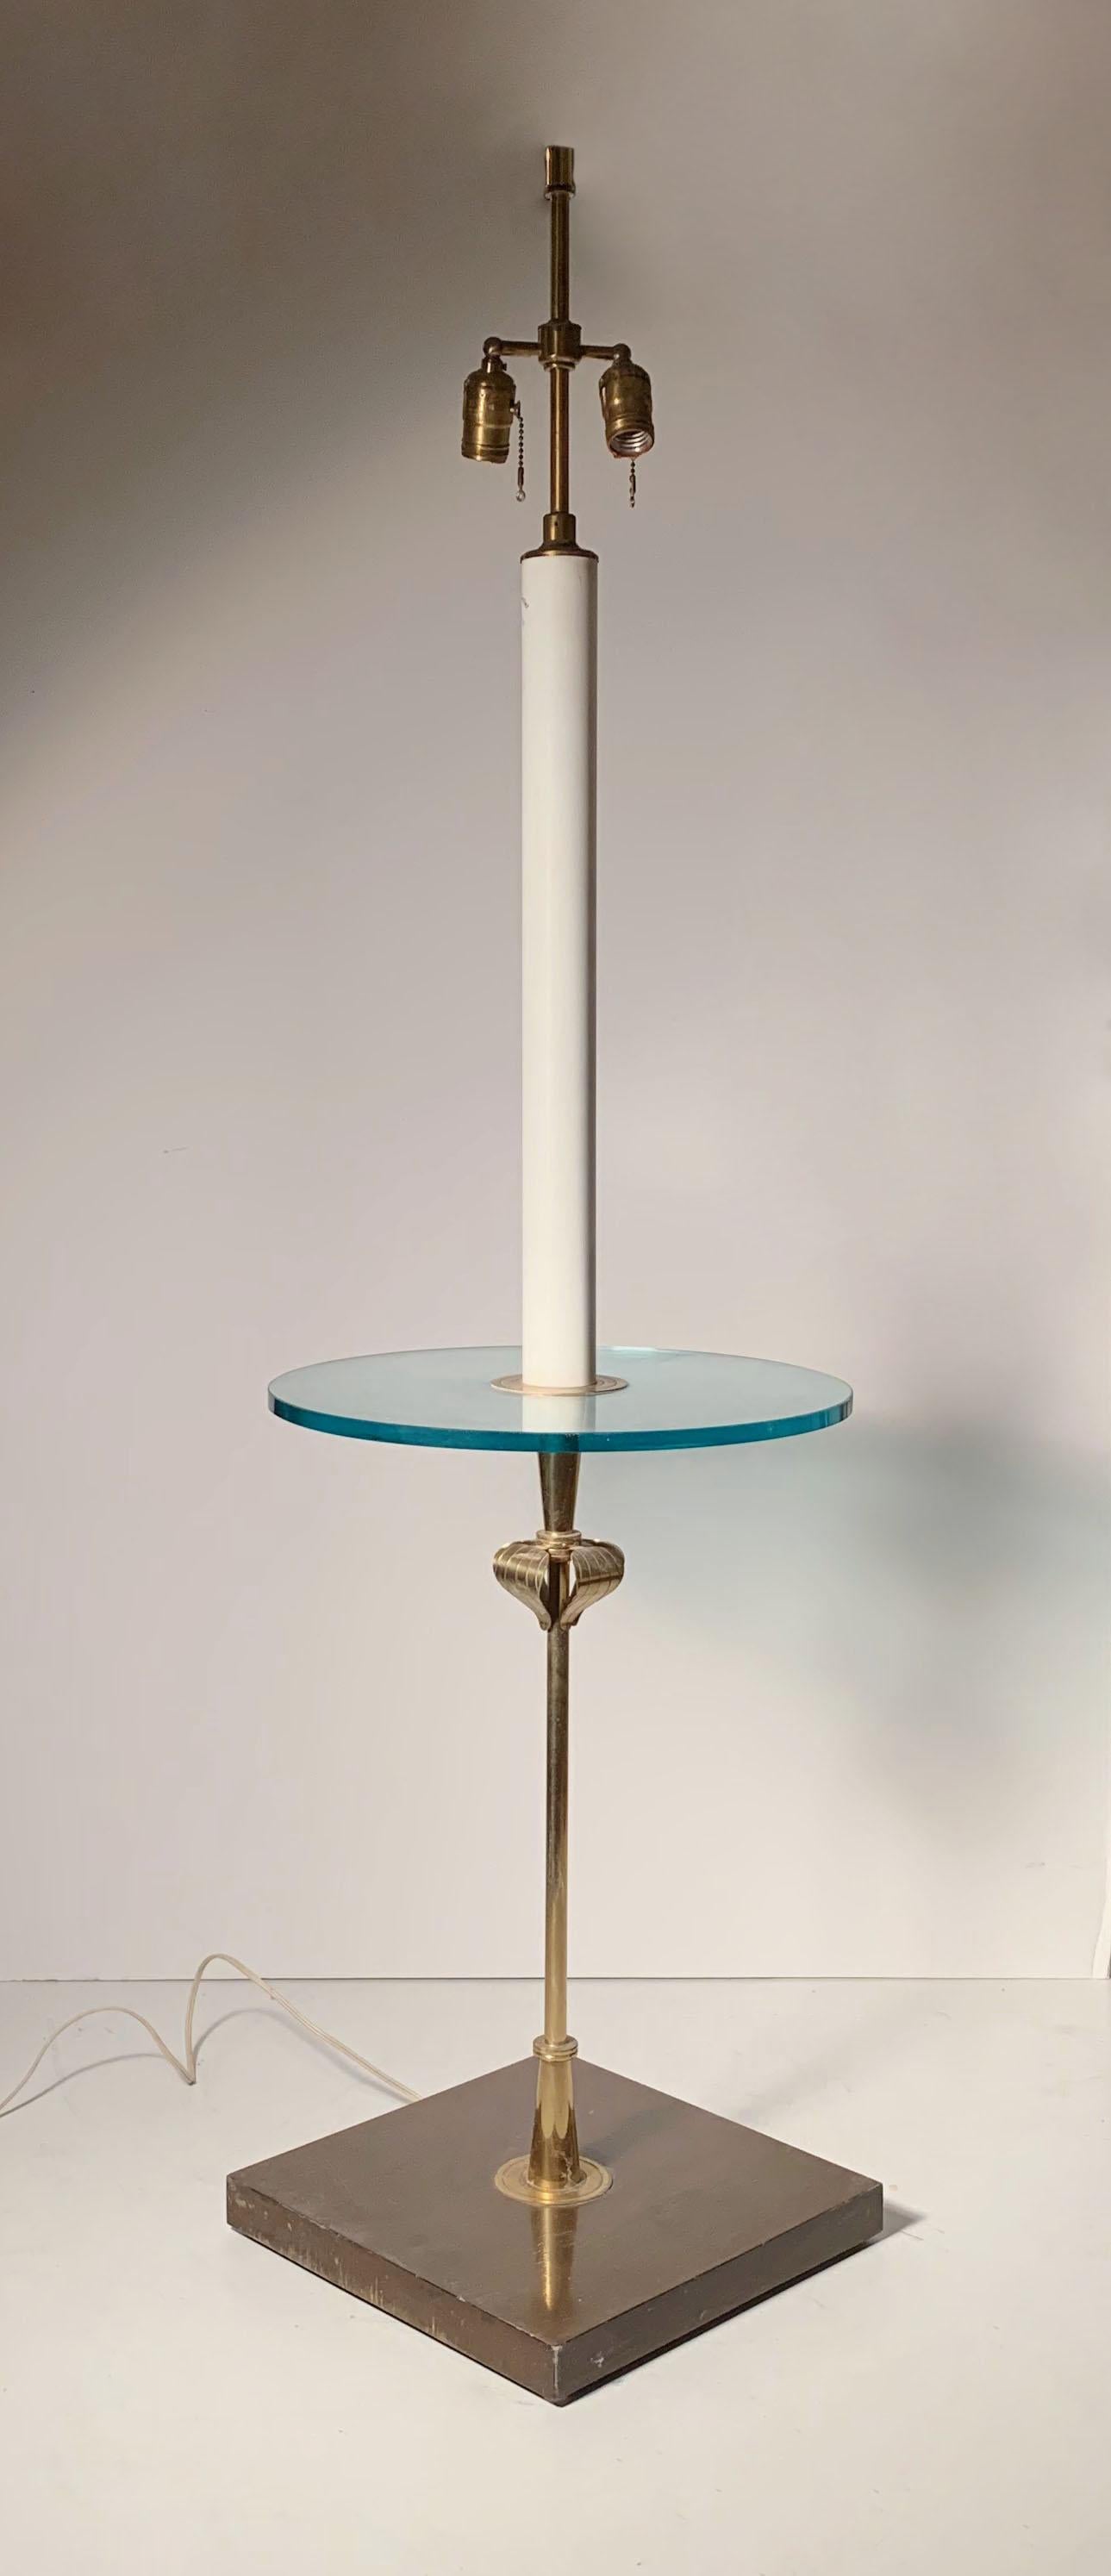 Table de lampadaire Tommi Parzinger par Parzinger Originals.
Signé en bas,